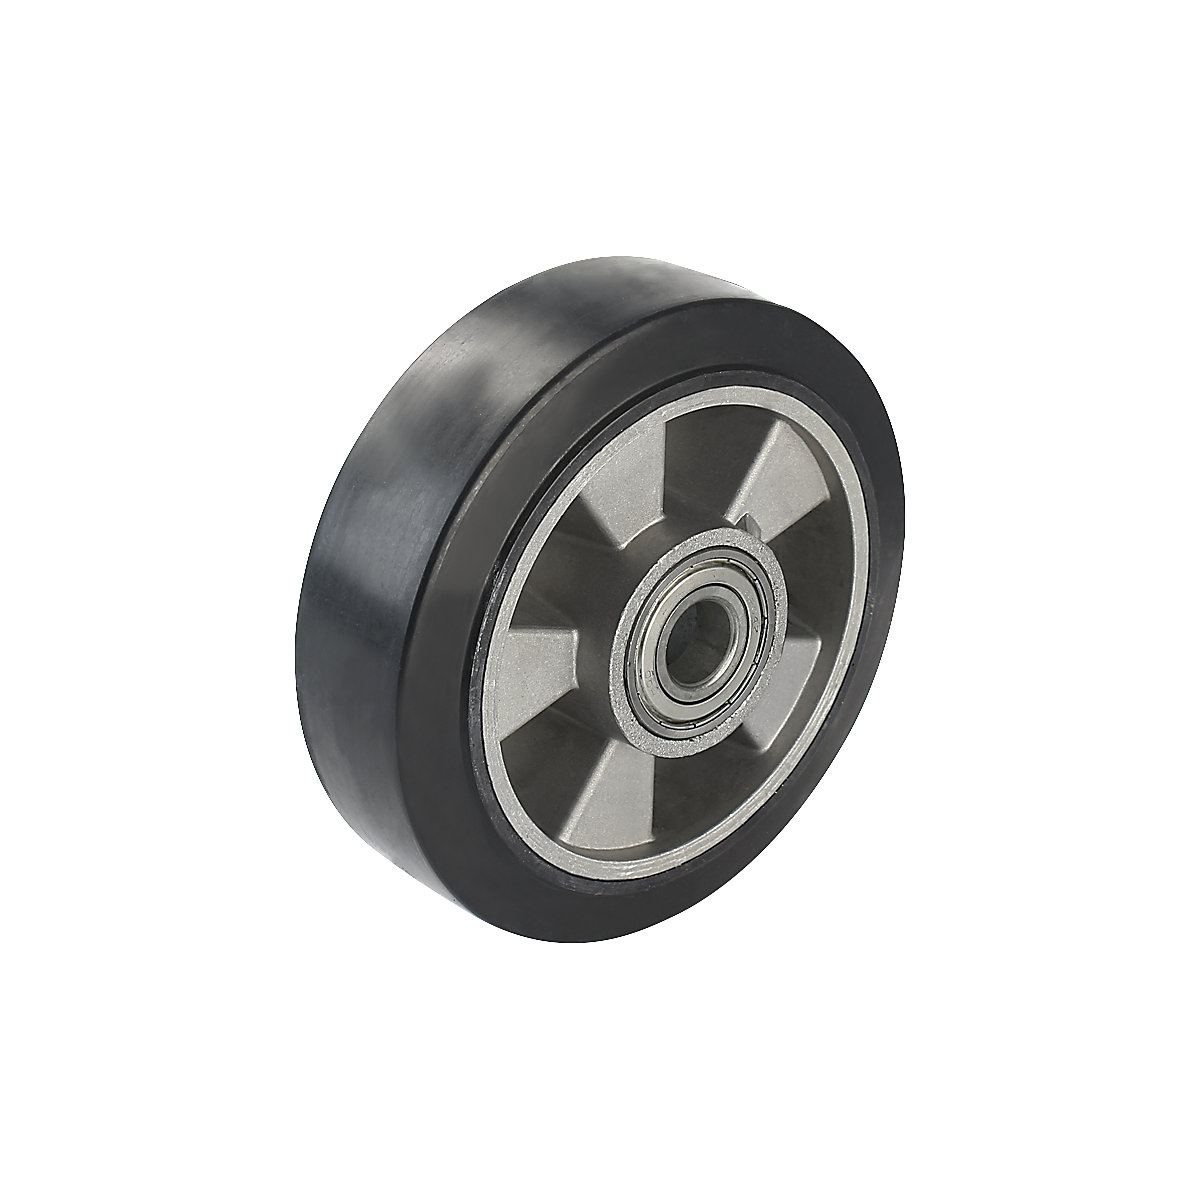 Elastični kotač od pune gume, u crnoj boji – Proroll, precizni kuglični ležajevi, Ø x širina kotača 160 x 50 mm-2